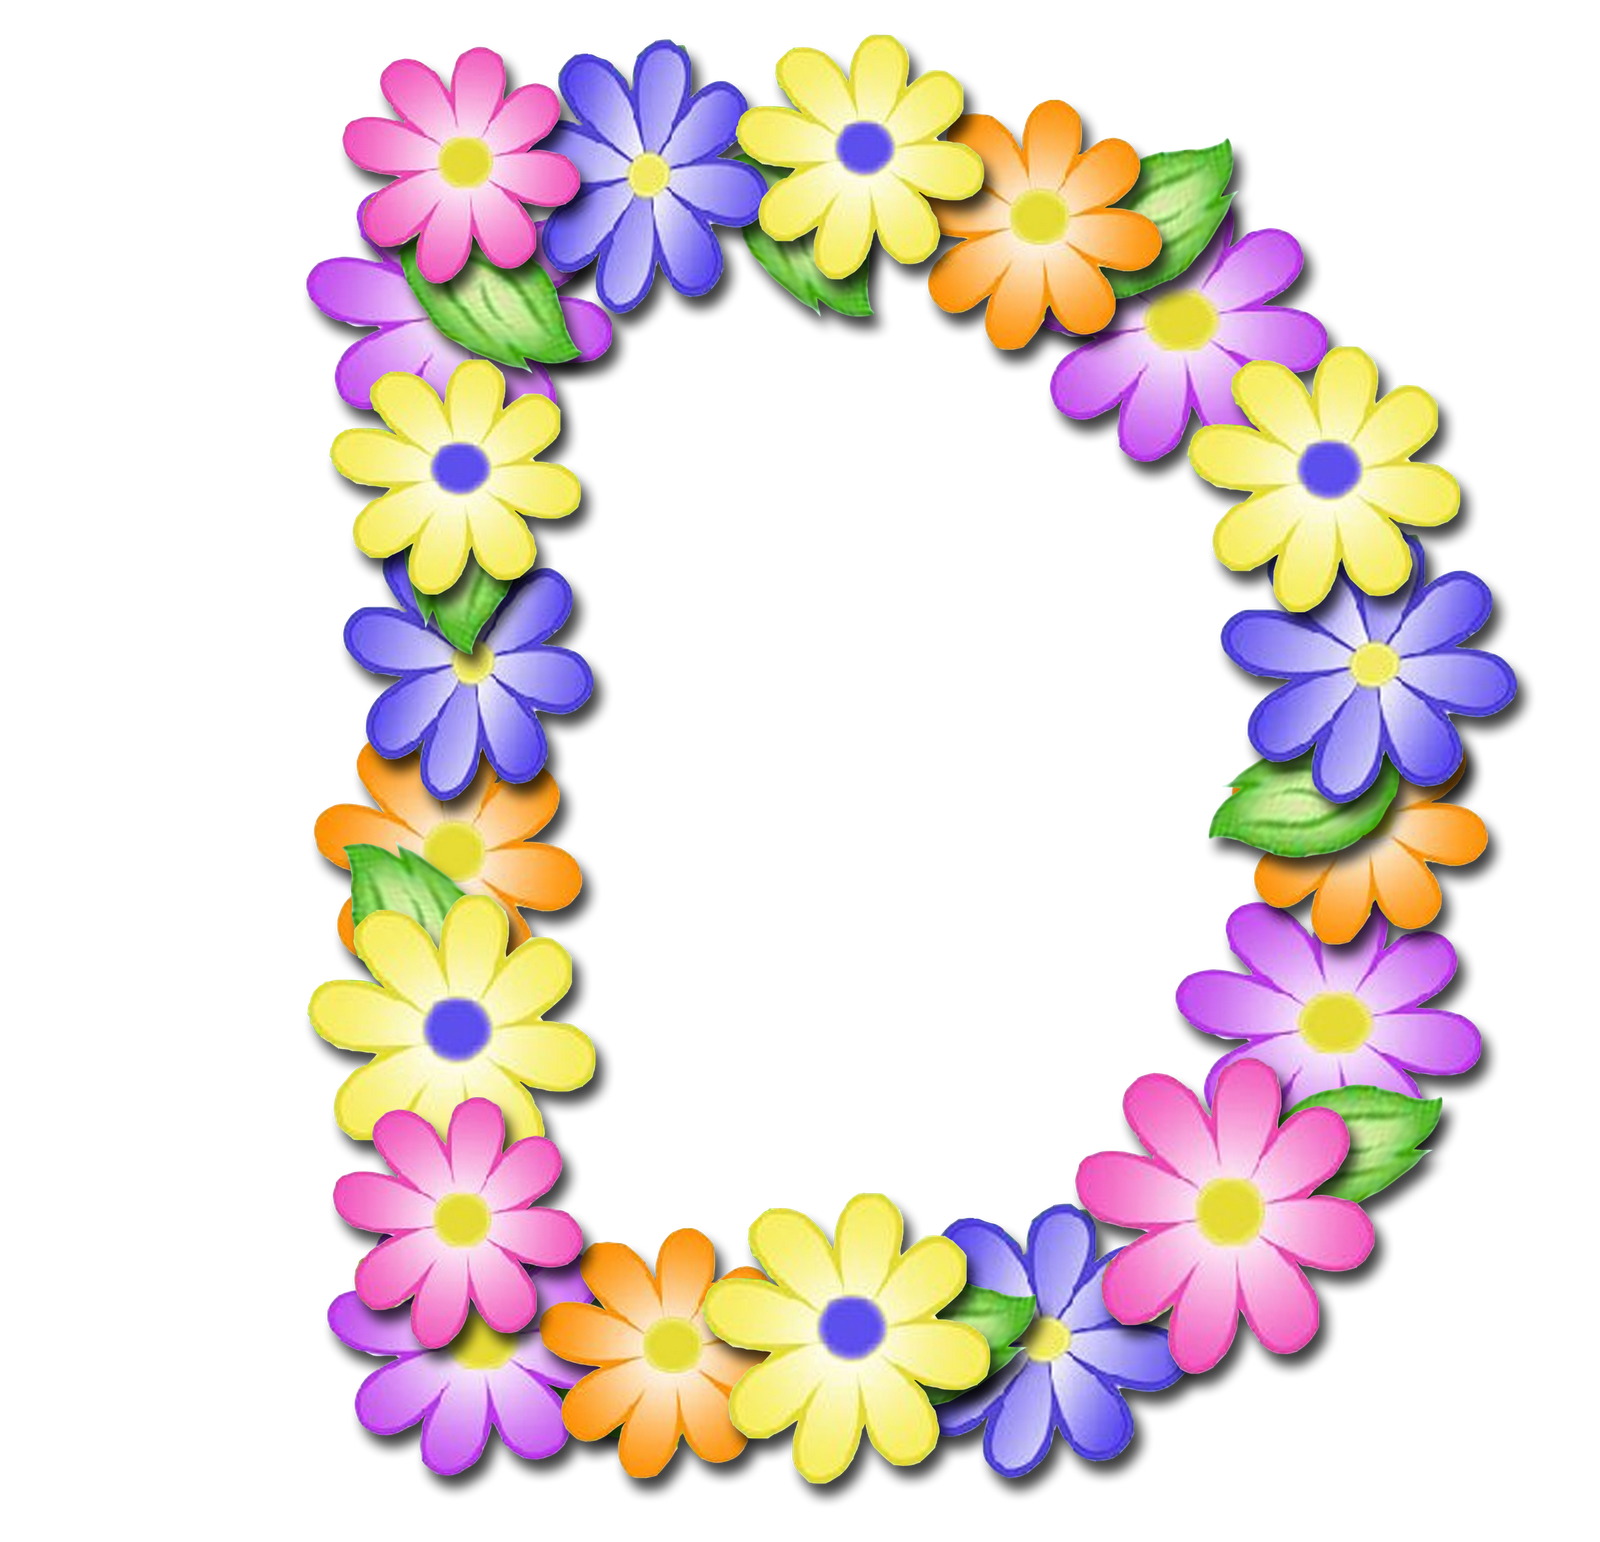 صور الحروف الإنجليزية بأجمل الزهور والورود بخلفية شفافة بنج png وجودة عالية للمصممين :: إبحث عن حروف إسمك بالإنجليزية P_1699u6wfp4